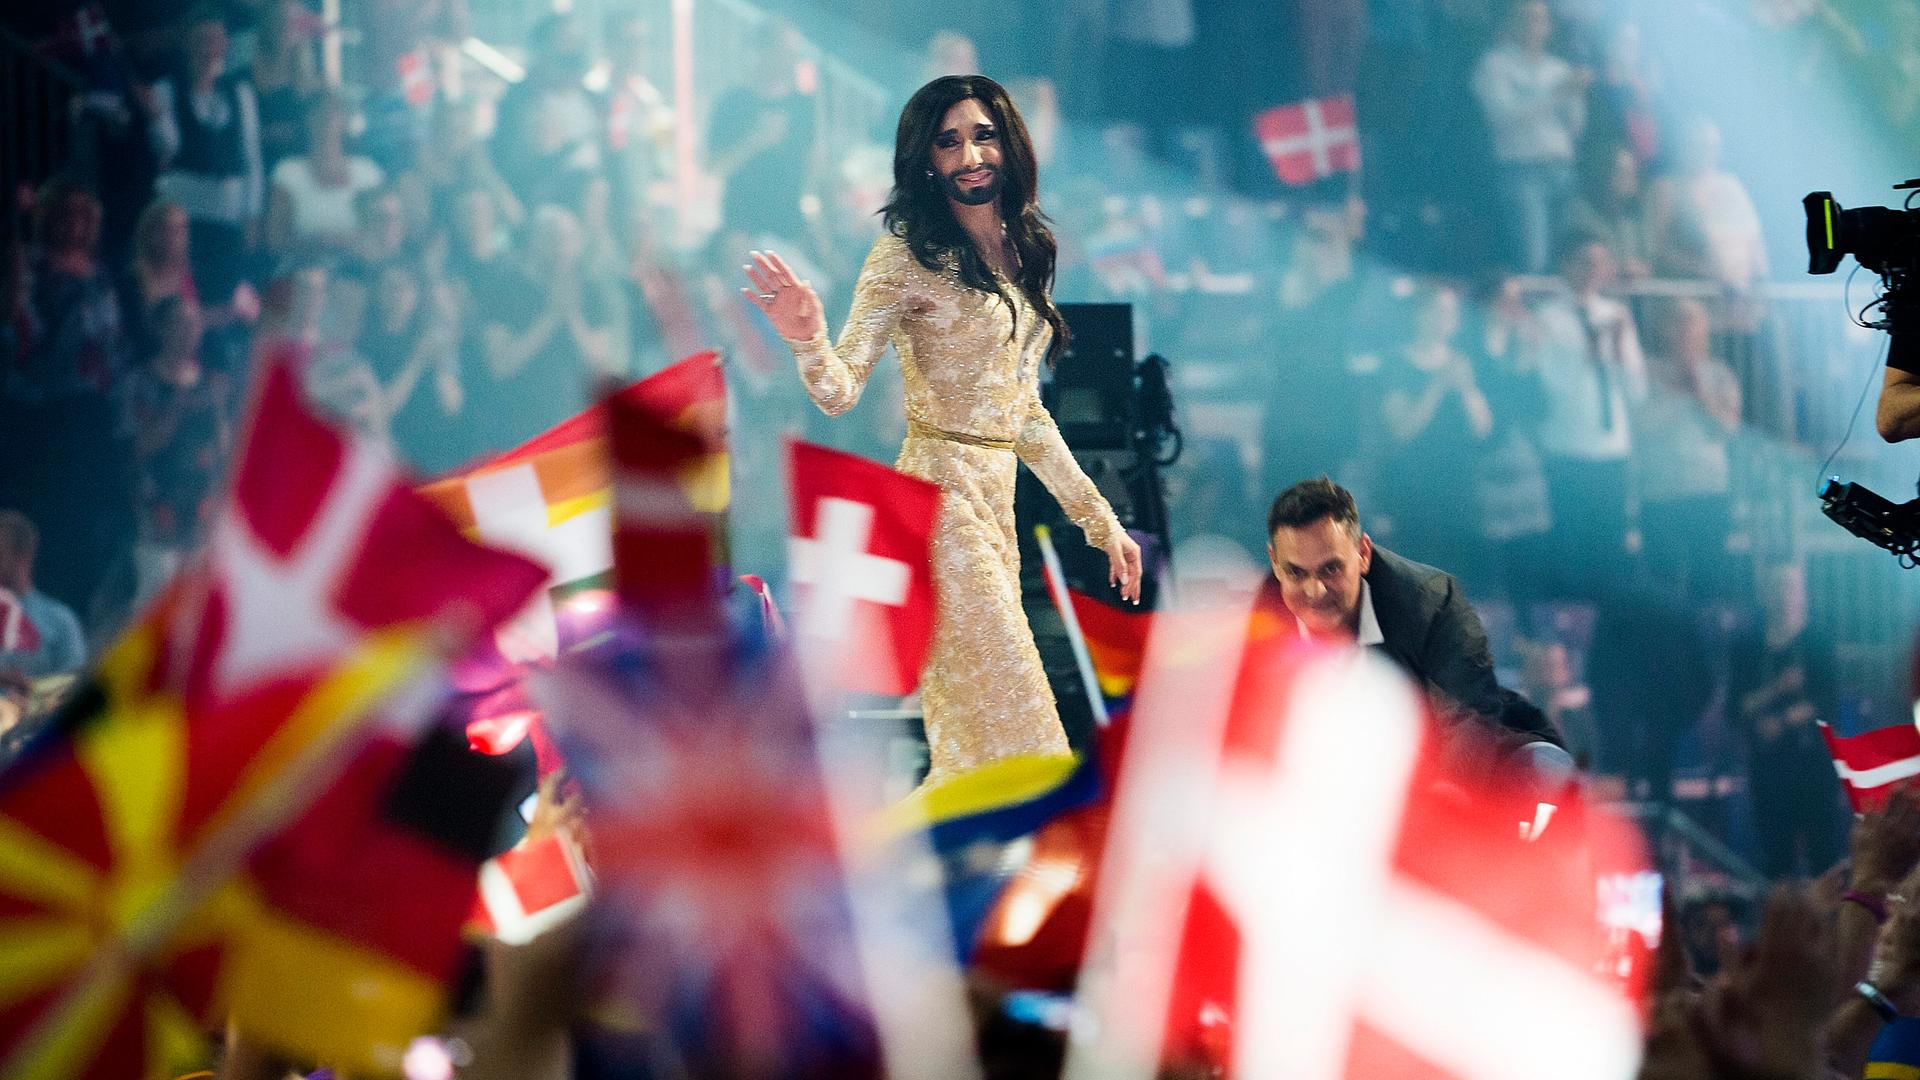 Beim 59. Eurovision Song Contest (ESC)  in Kopenhagen 2014 lässt sich Conchita Wurst nach dem Sieg auf der Bühne feiern, im Vordergrund sind Flaggen verschiedener Länder zu sehen.